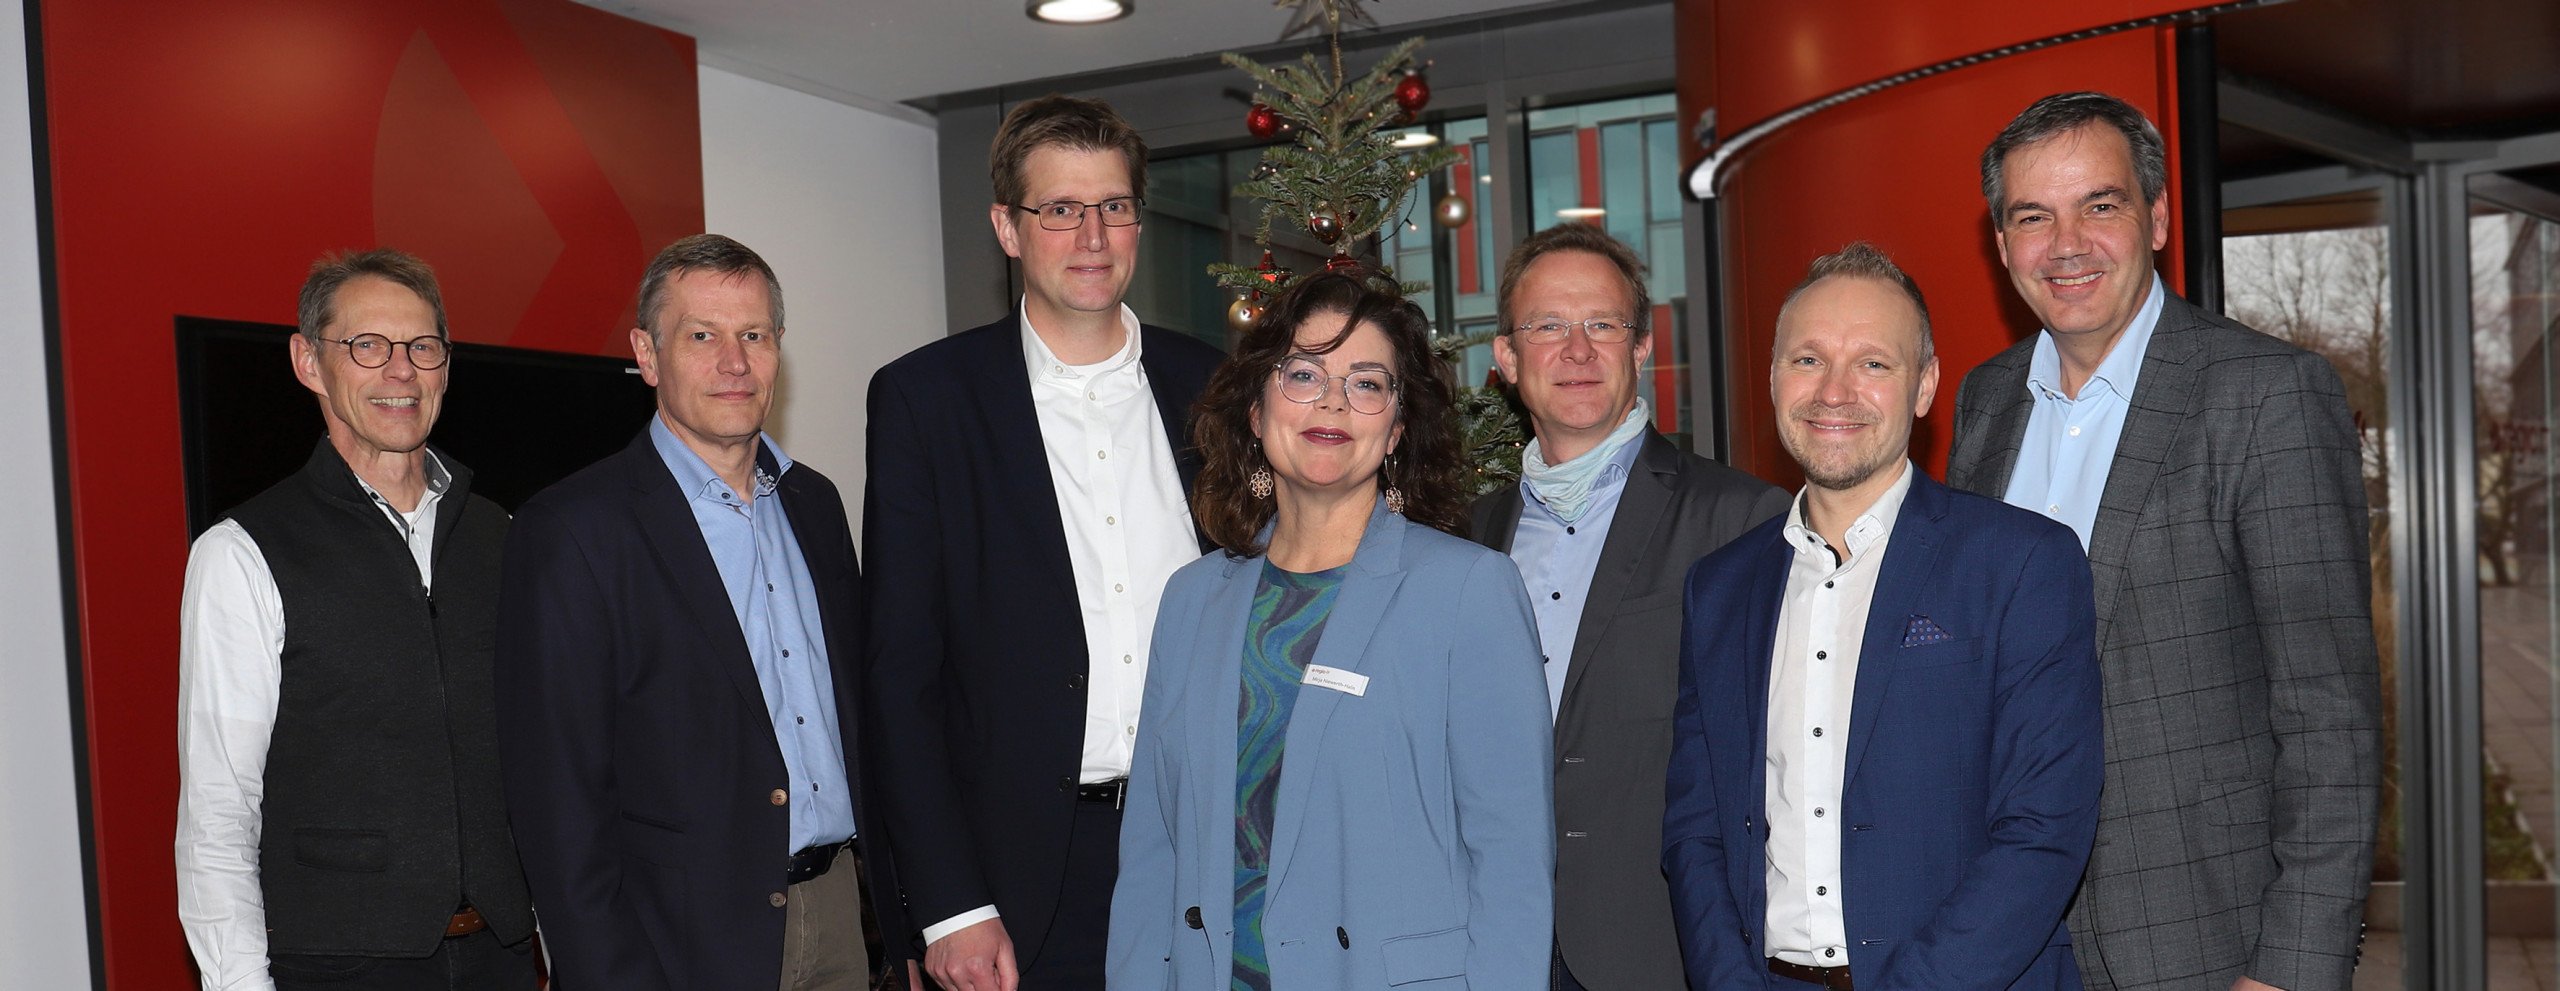 Beitrag: Energieeffizienz im Fokus: Bundestagsabgeordneter Maik Außendorf besucht auf Einladung von VITAKO modernes Rechenzentrum von regio iT